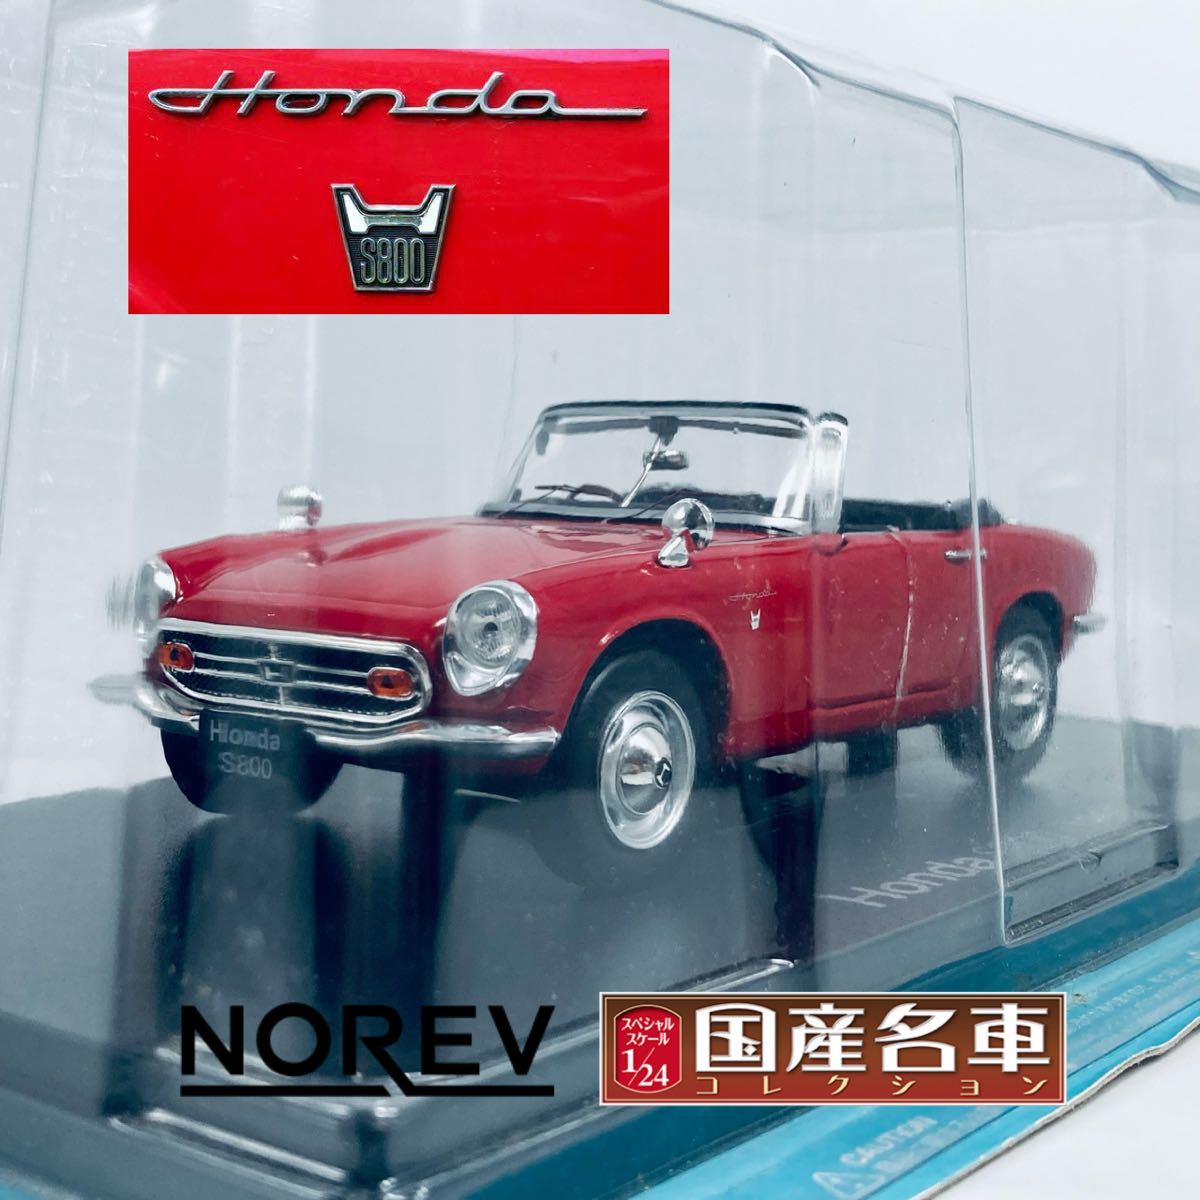 NOREV ノレブ 1/24 1966年型 EK9 ホンダ S800 レッド 国産名車コレクション_画像1